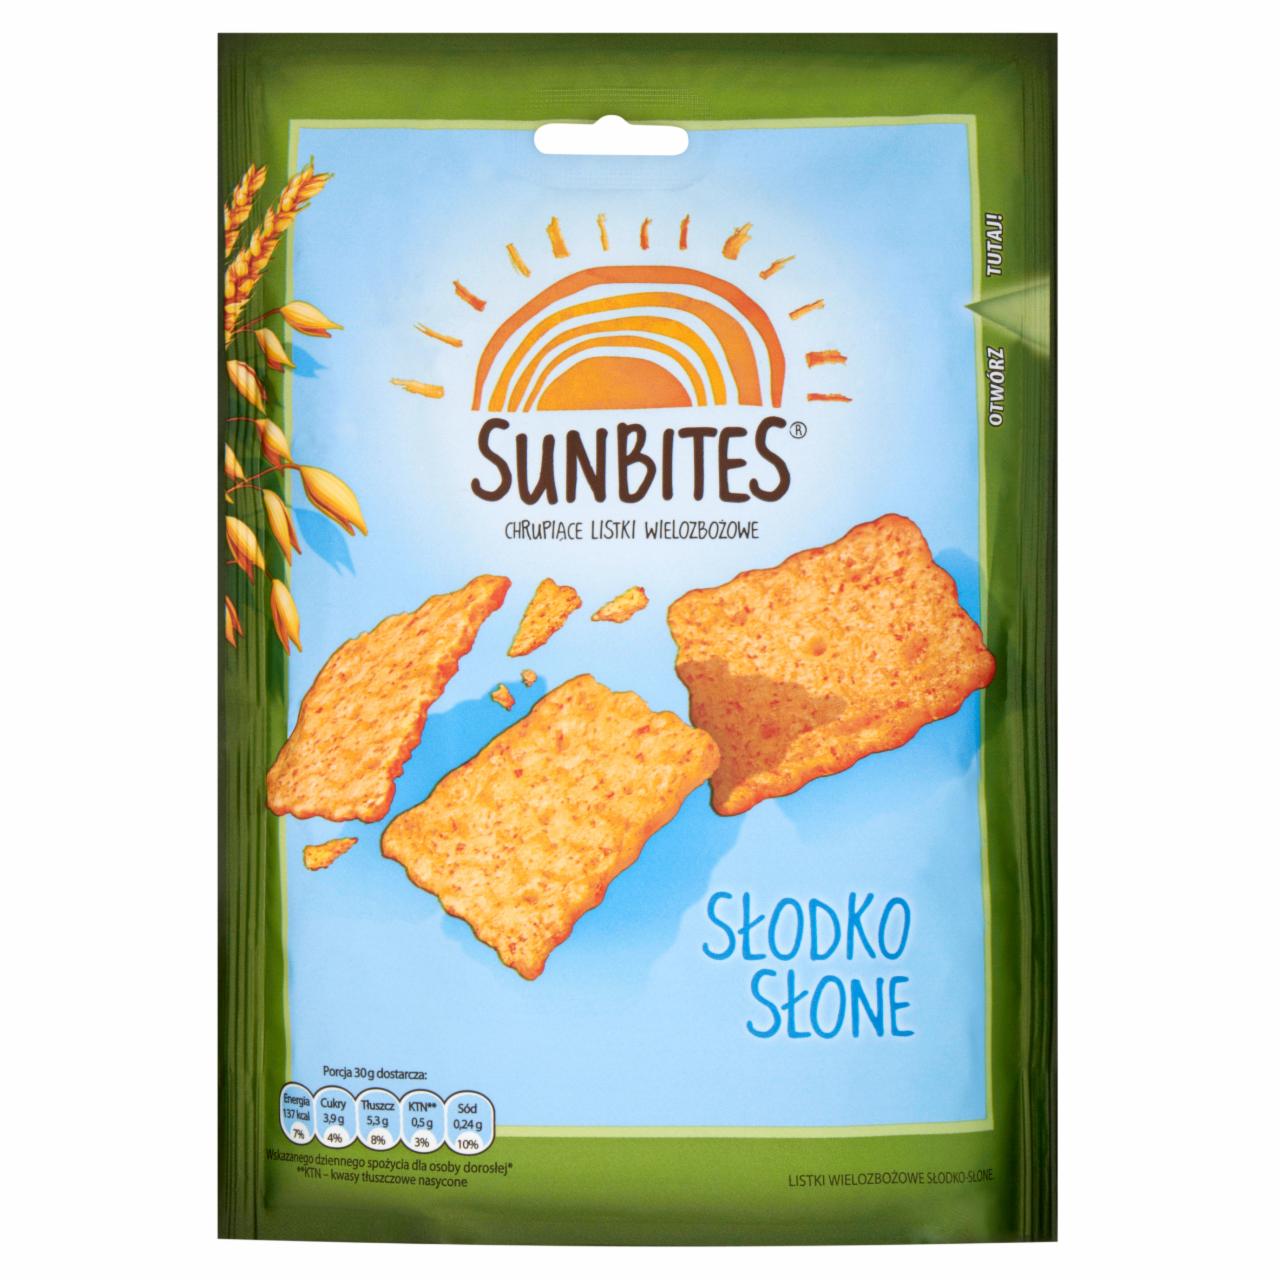 Zdjęcia - Sunbites Słodko słone Chrupiące listki wielozbożowe 100 g